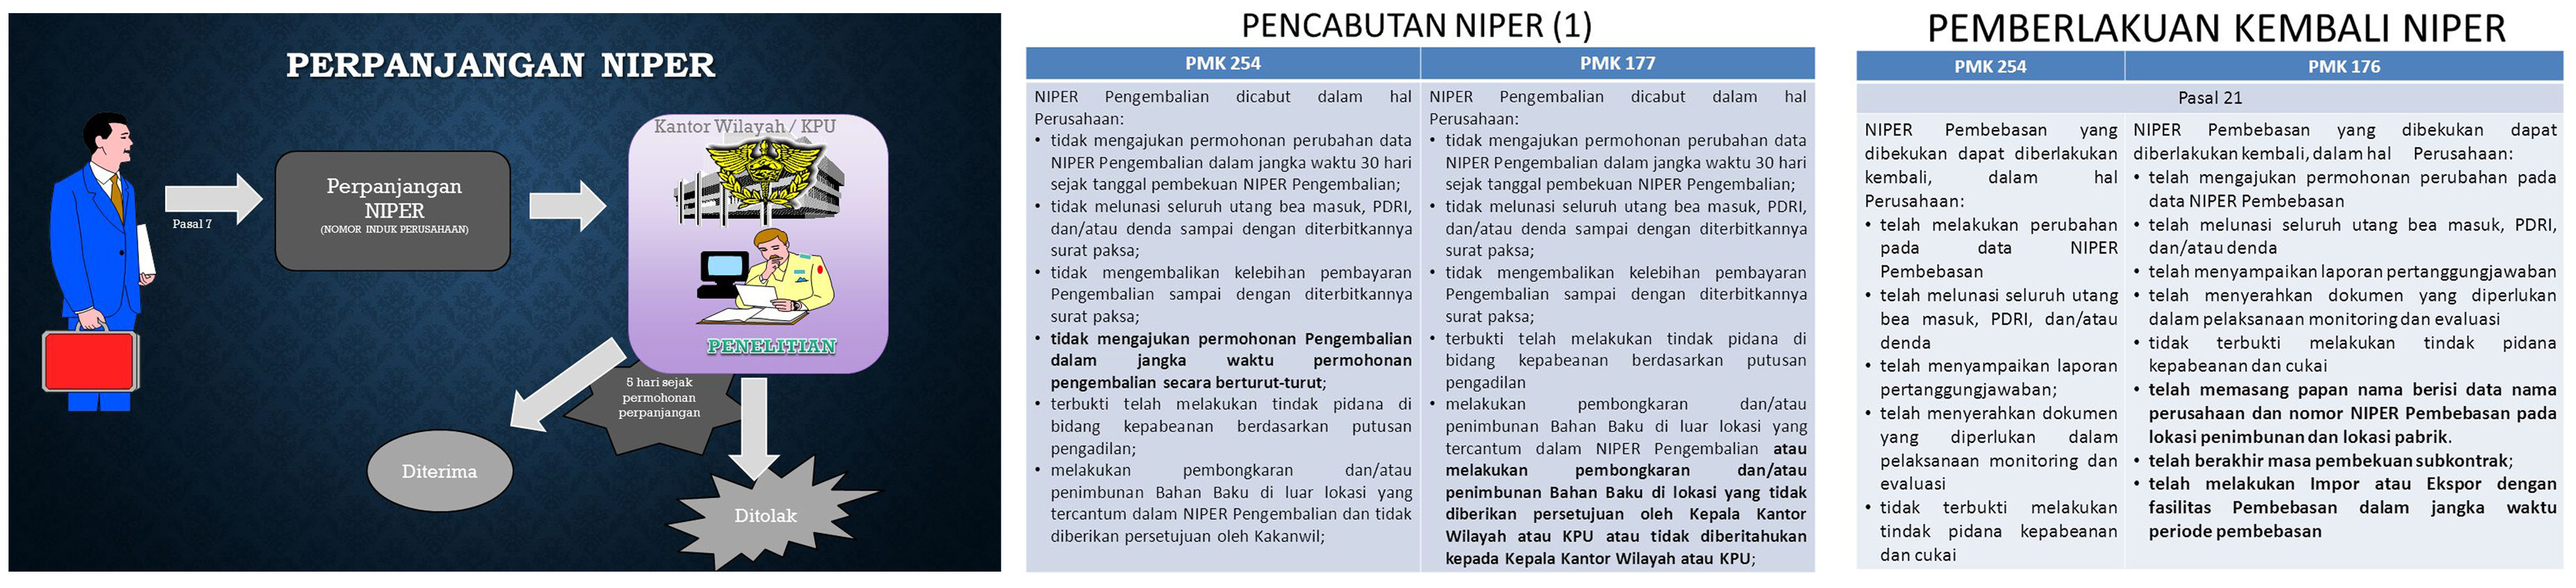 http://www.perizinanindonesia.com/upload/Niper%204.jpg